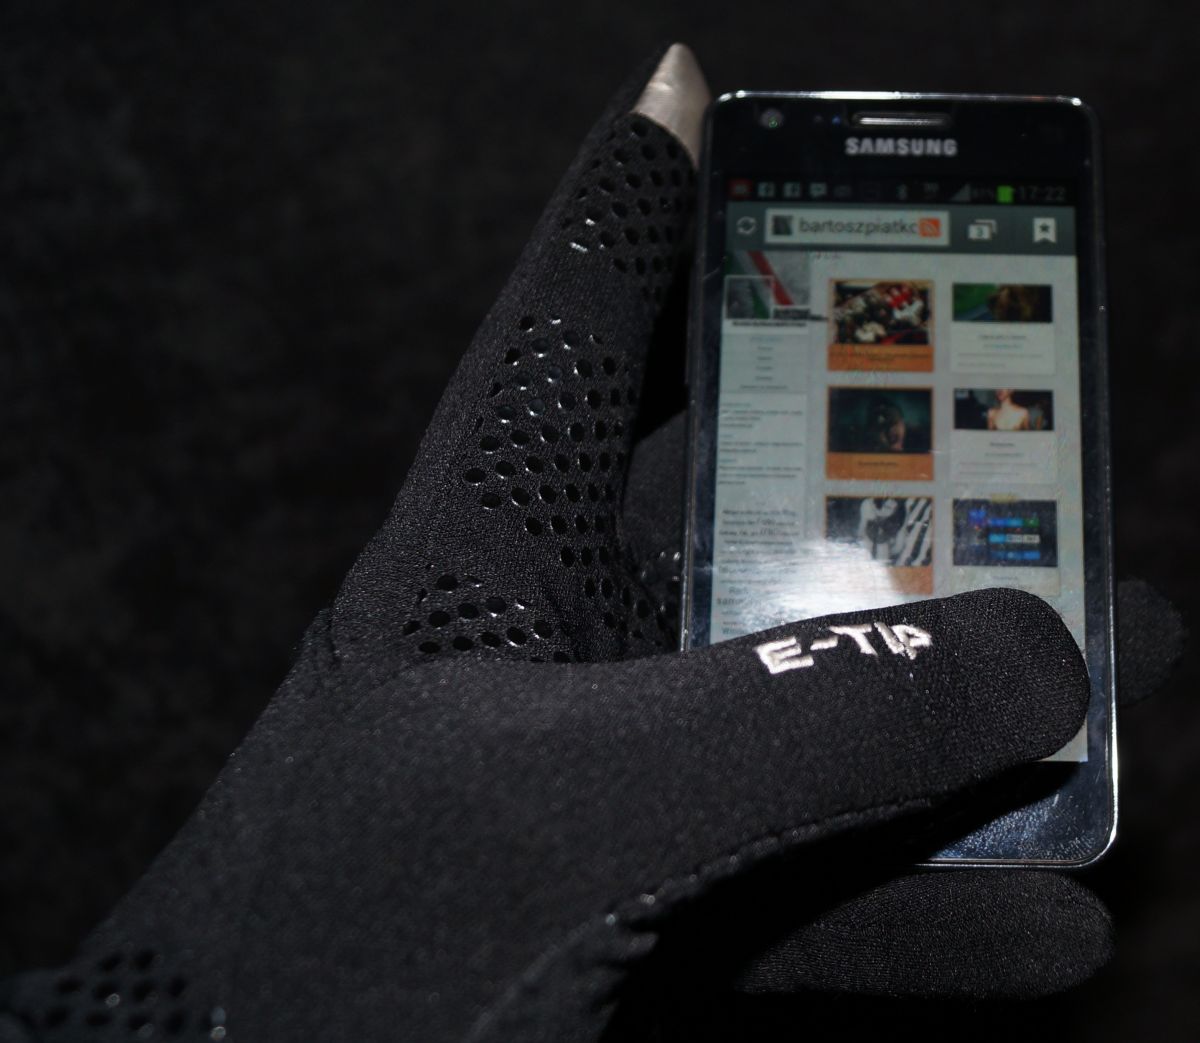 E-Tip Glove czyli ciepło i wygoda